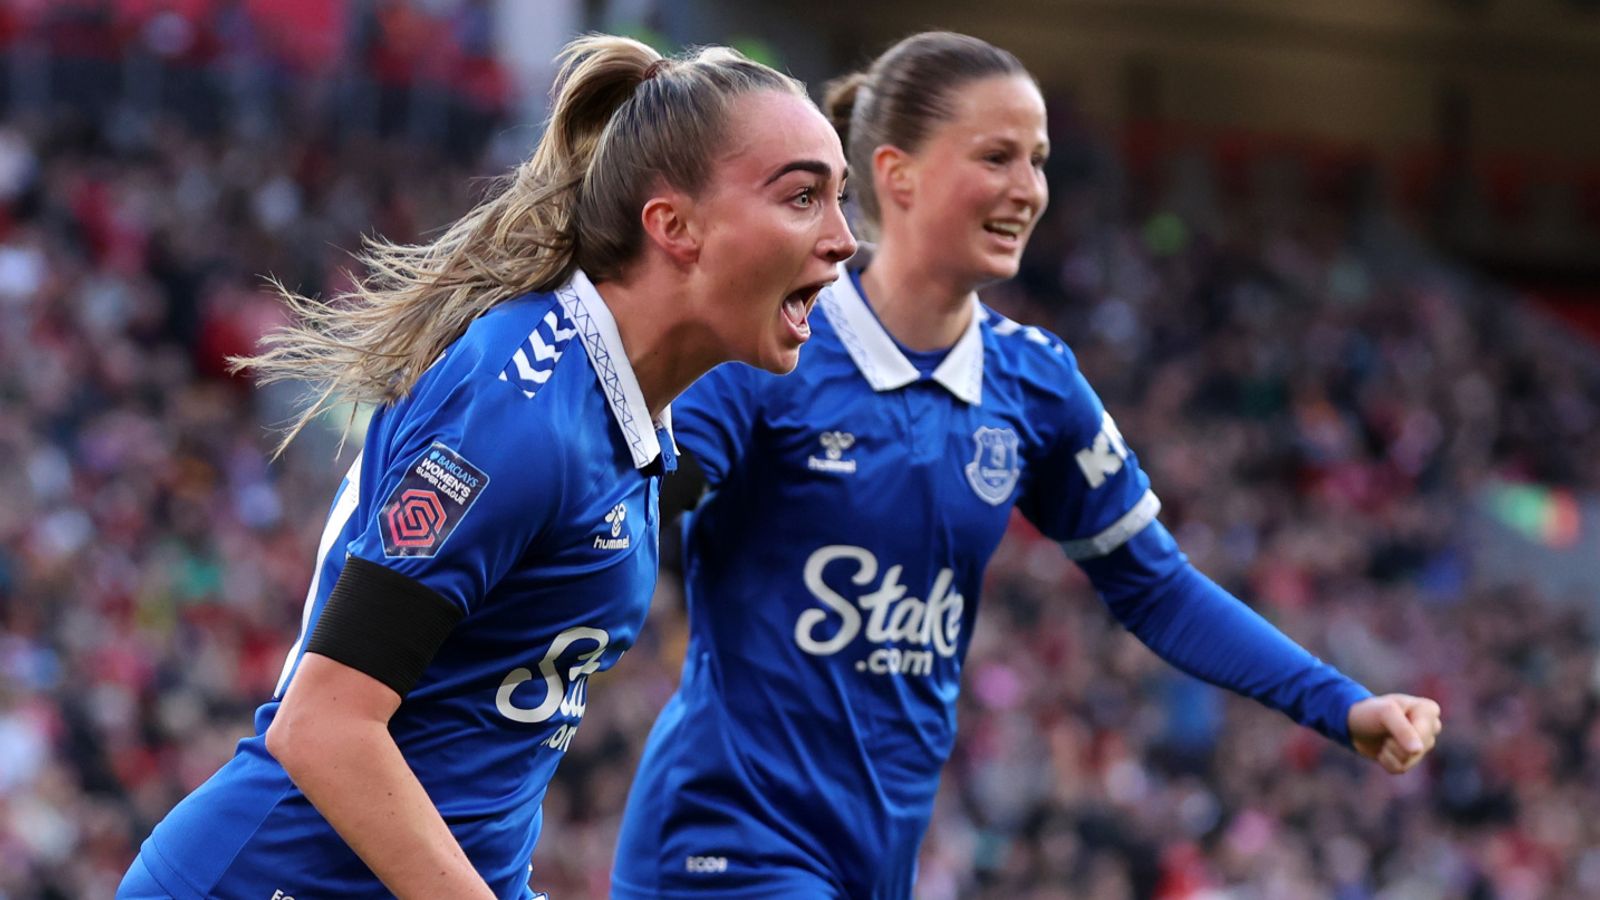 Liverpool Women 0-1 Everton Women: Megan Finneganová podle hlavičky Toffees vyhrála Merseyside derby na Anfieldu |  fotbalové zprávy